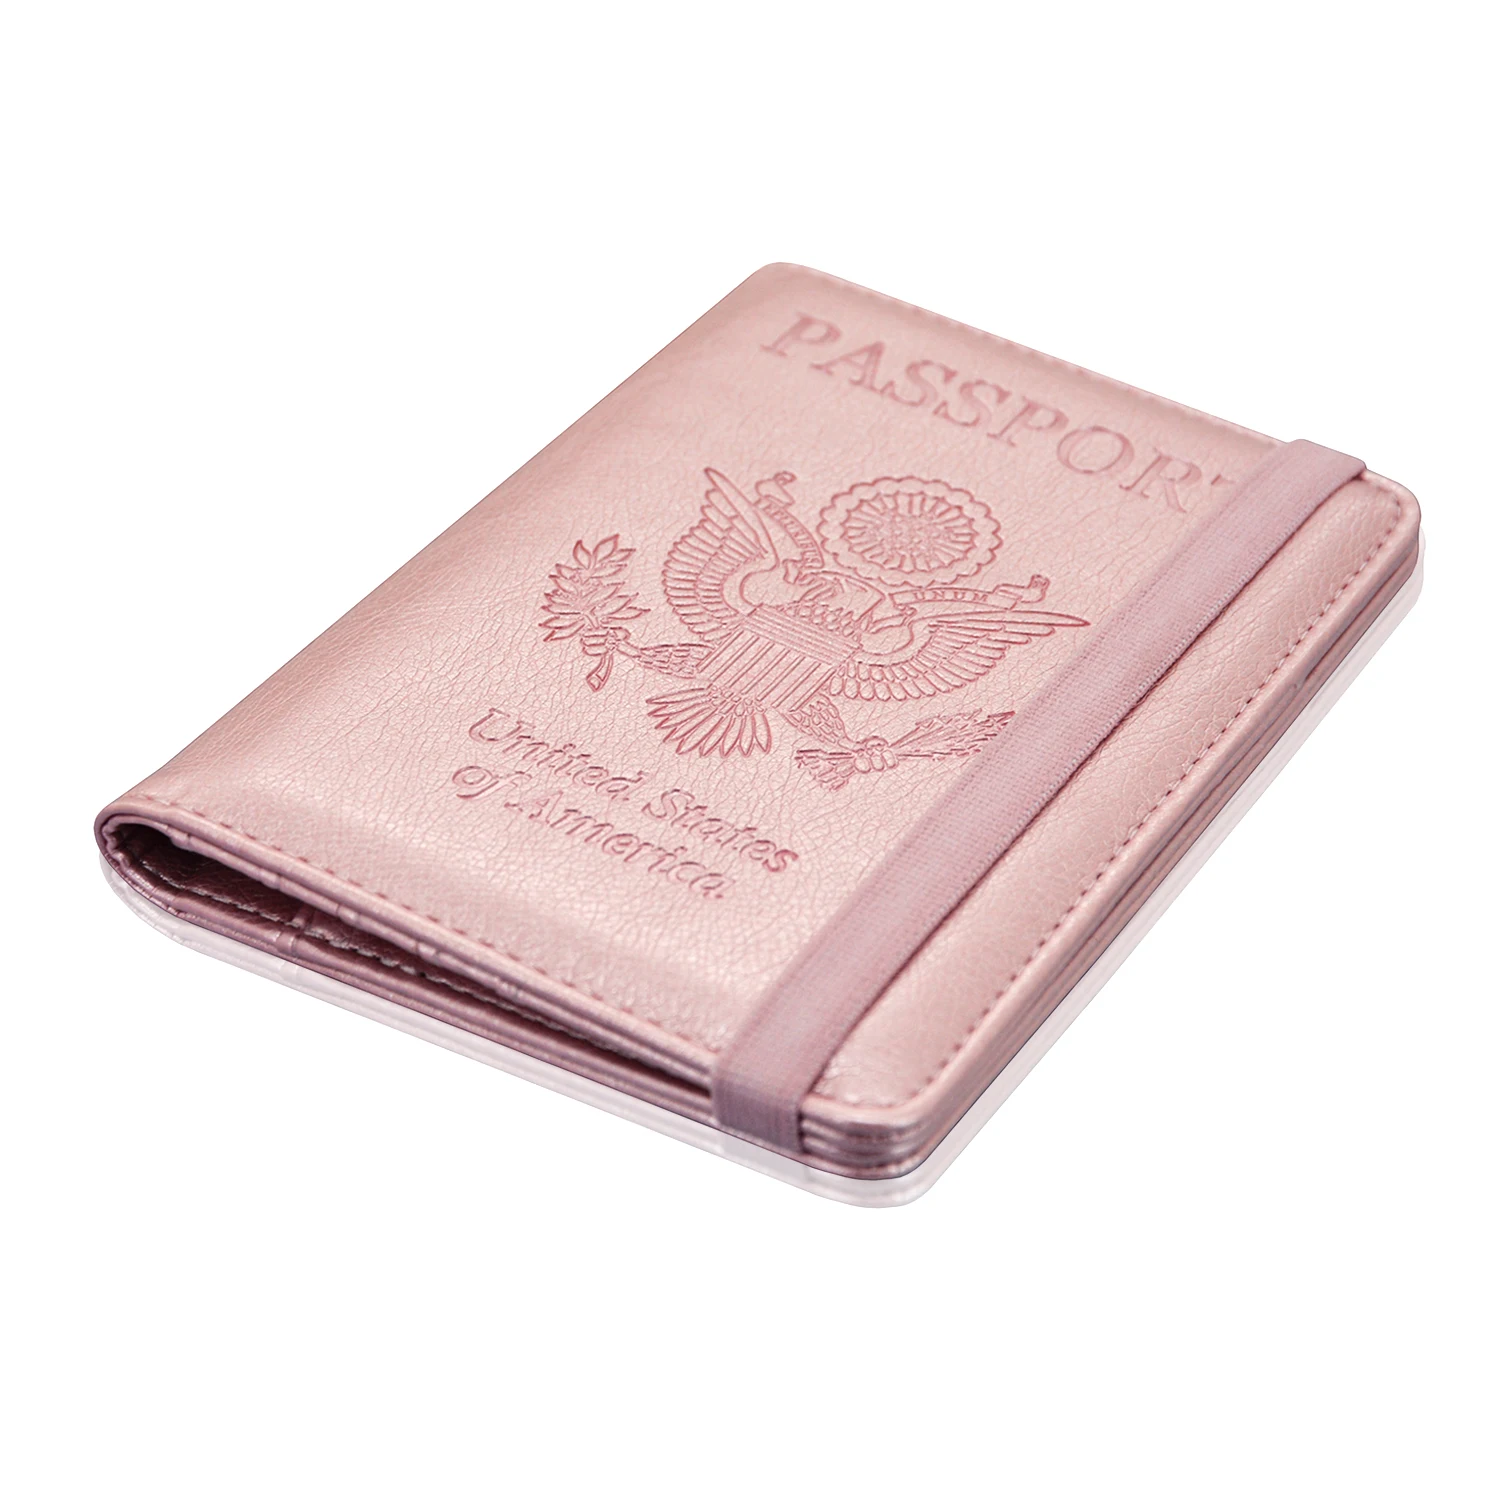 

Elastic band holder For Custom Travel Wallet Leather Cover Case for Passport Holder,RFID Blocking,, Multiple colour